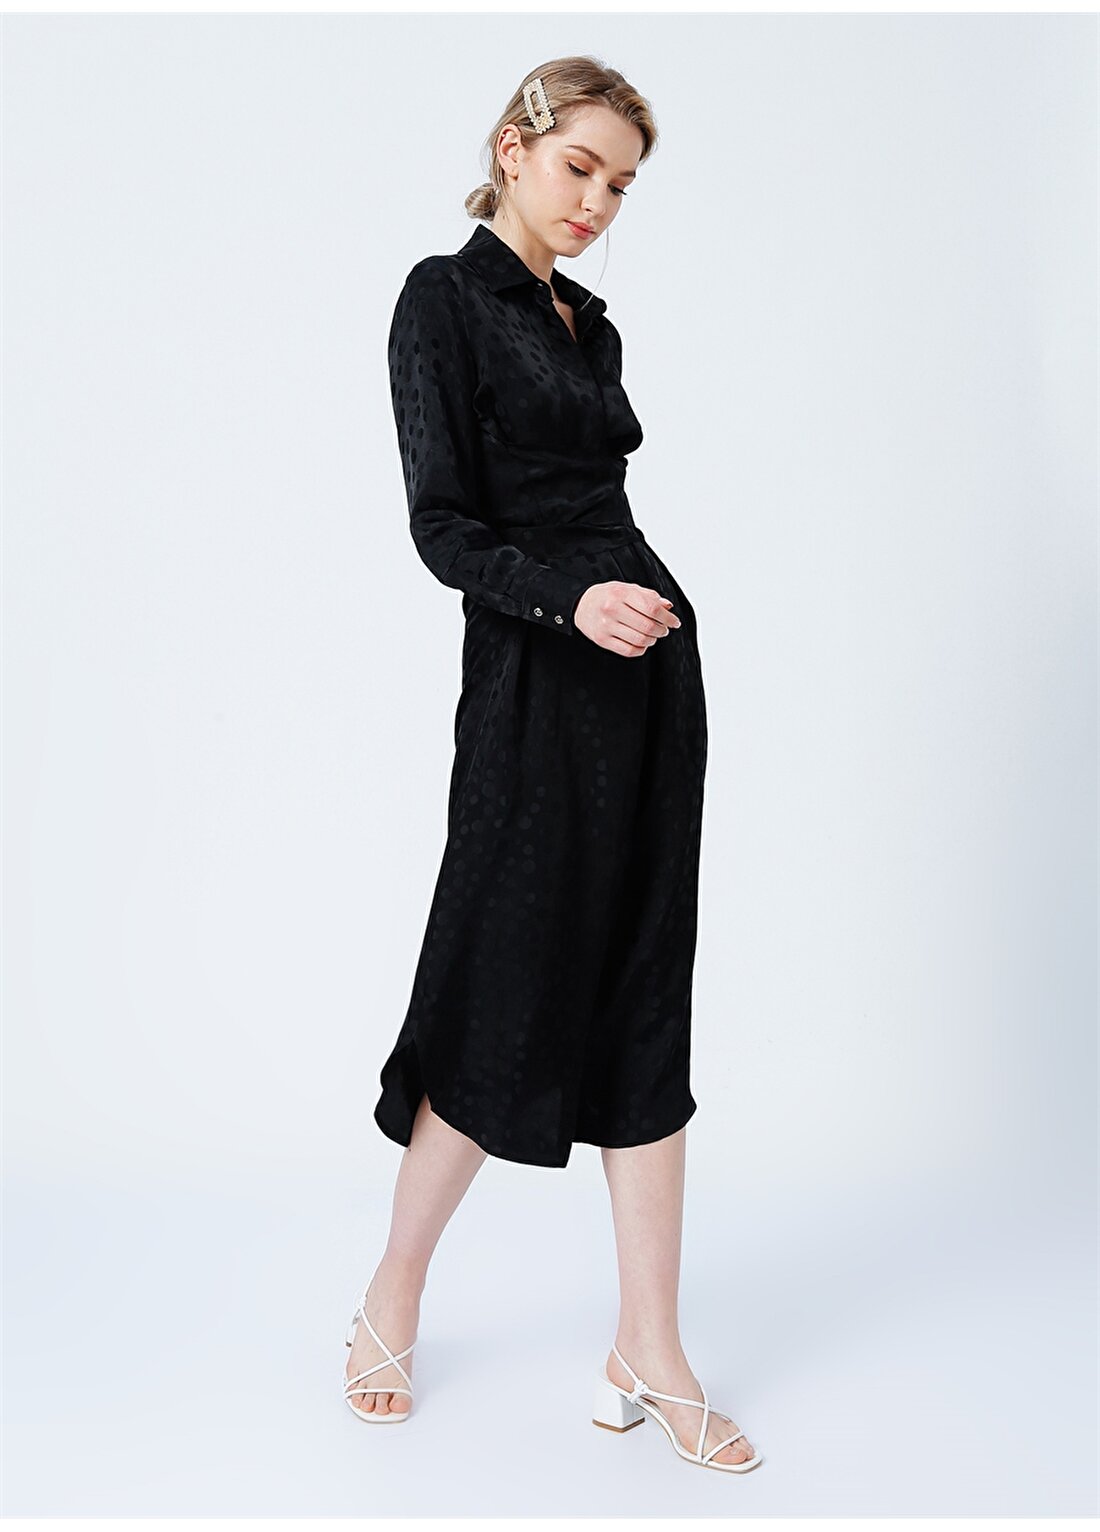 Pierre Cardin Eyma Siyah Kadın Elbise